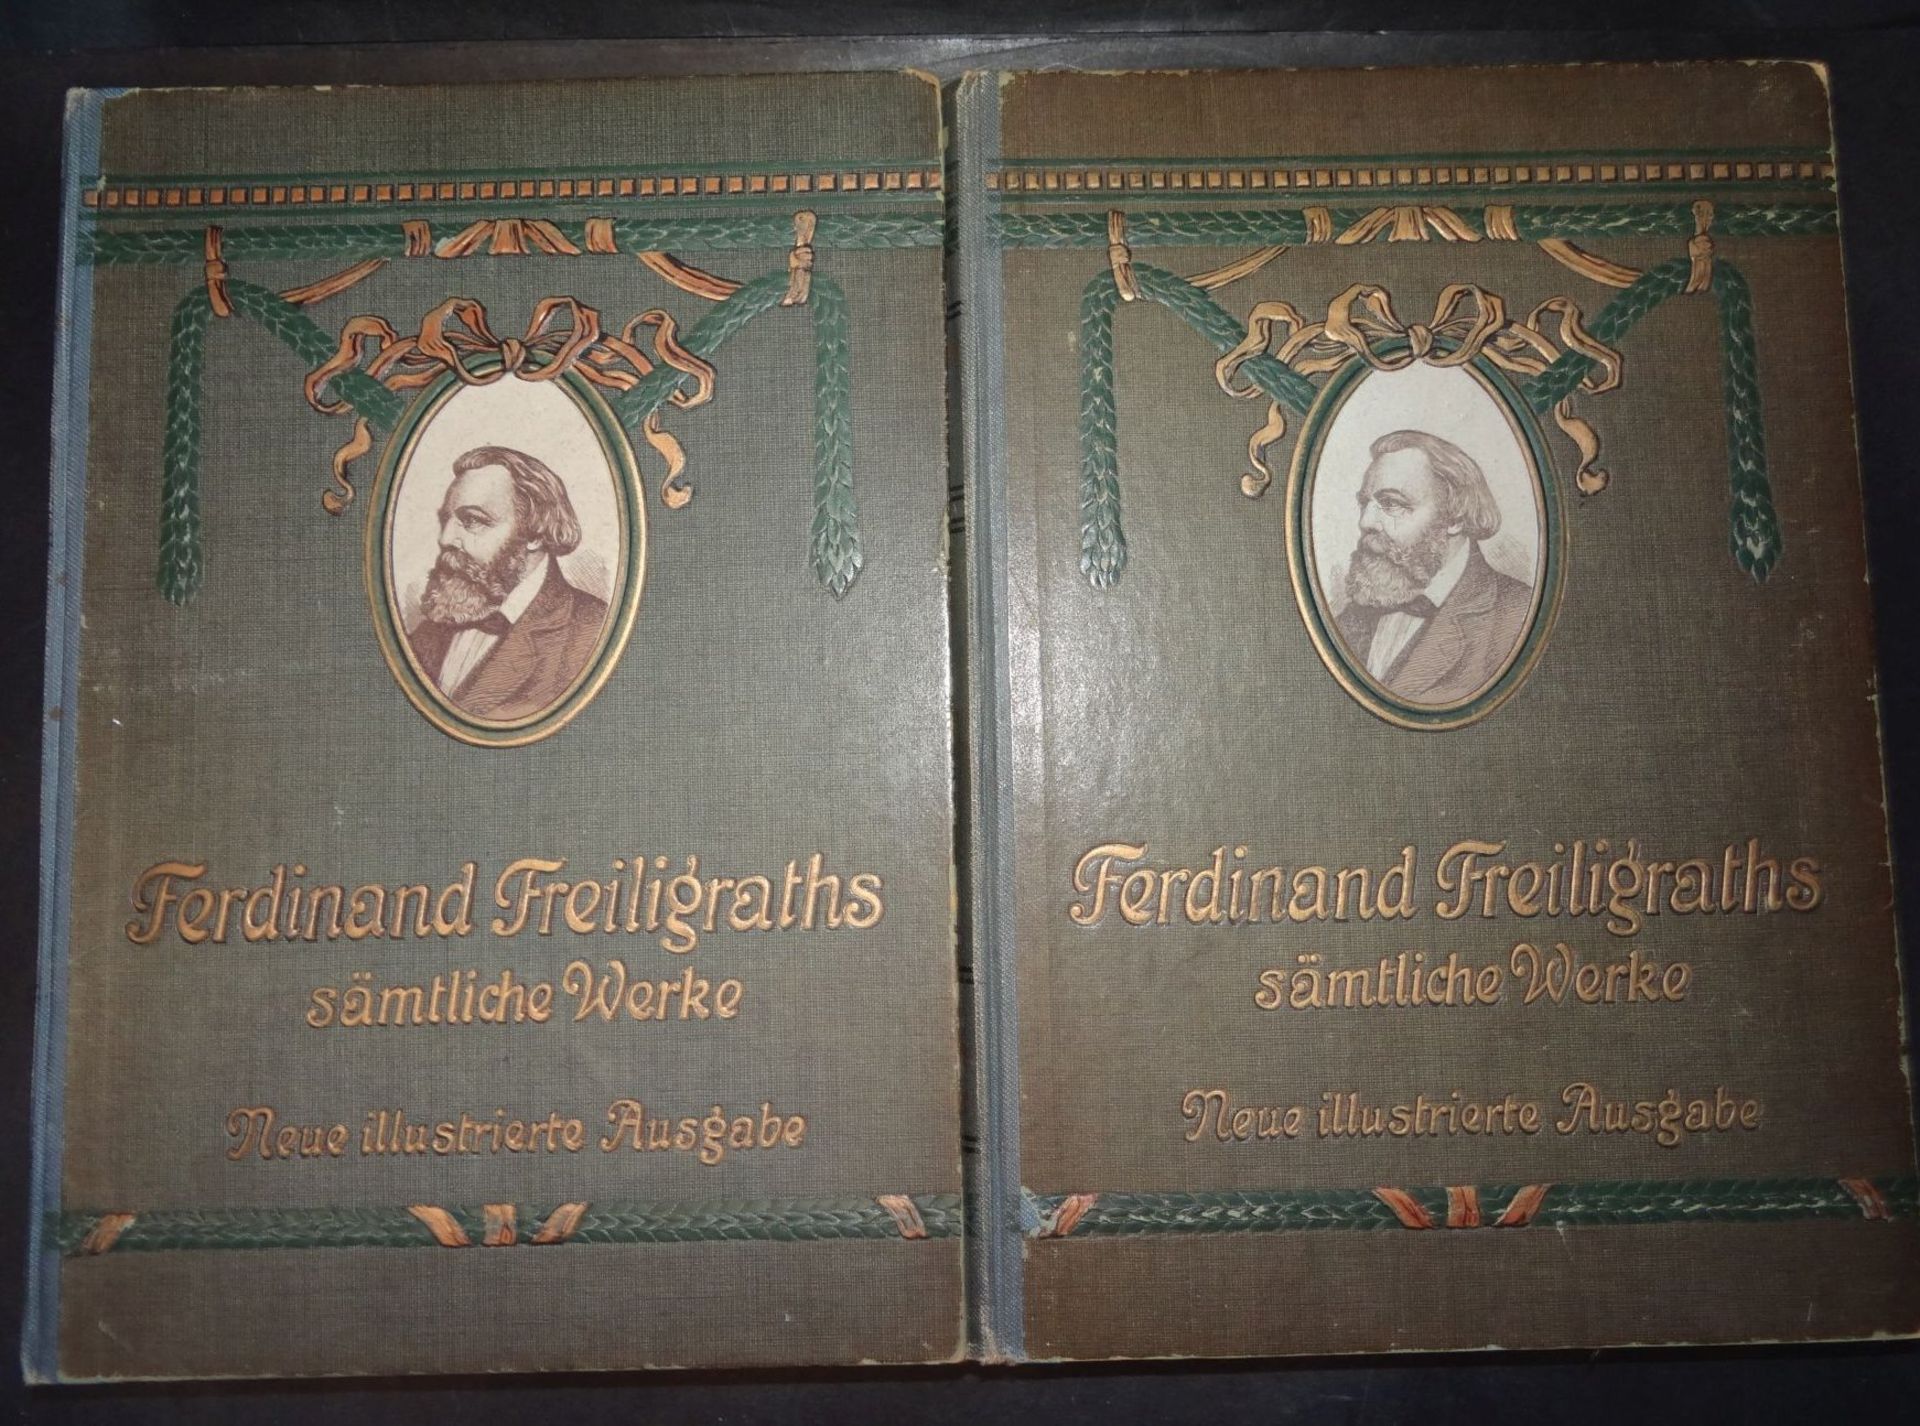 Ferdinand Freiligraths sämtliche Werke, 2 Bände um 1900, illustrie